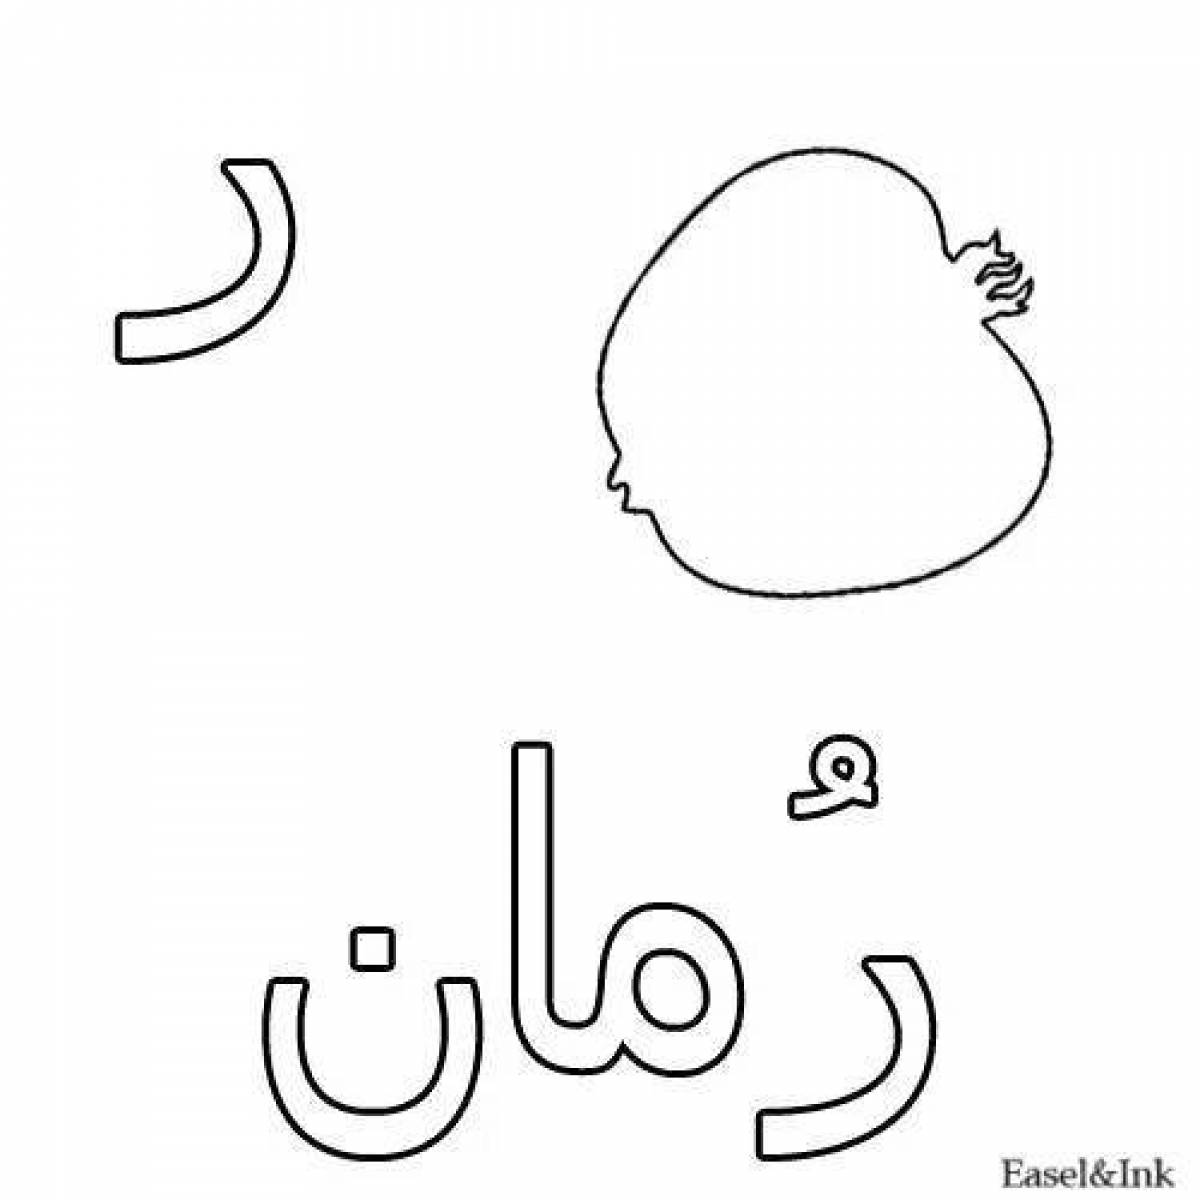 Привлекательная страница раскраски с арабским алфавитом